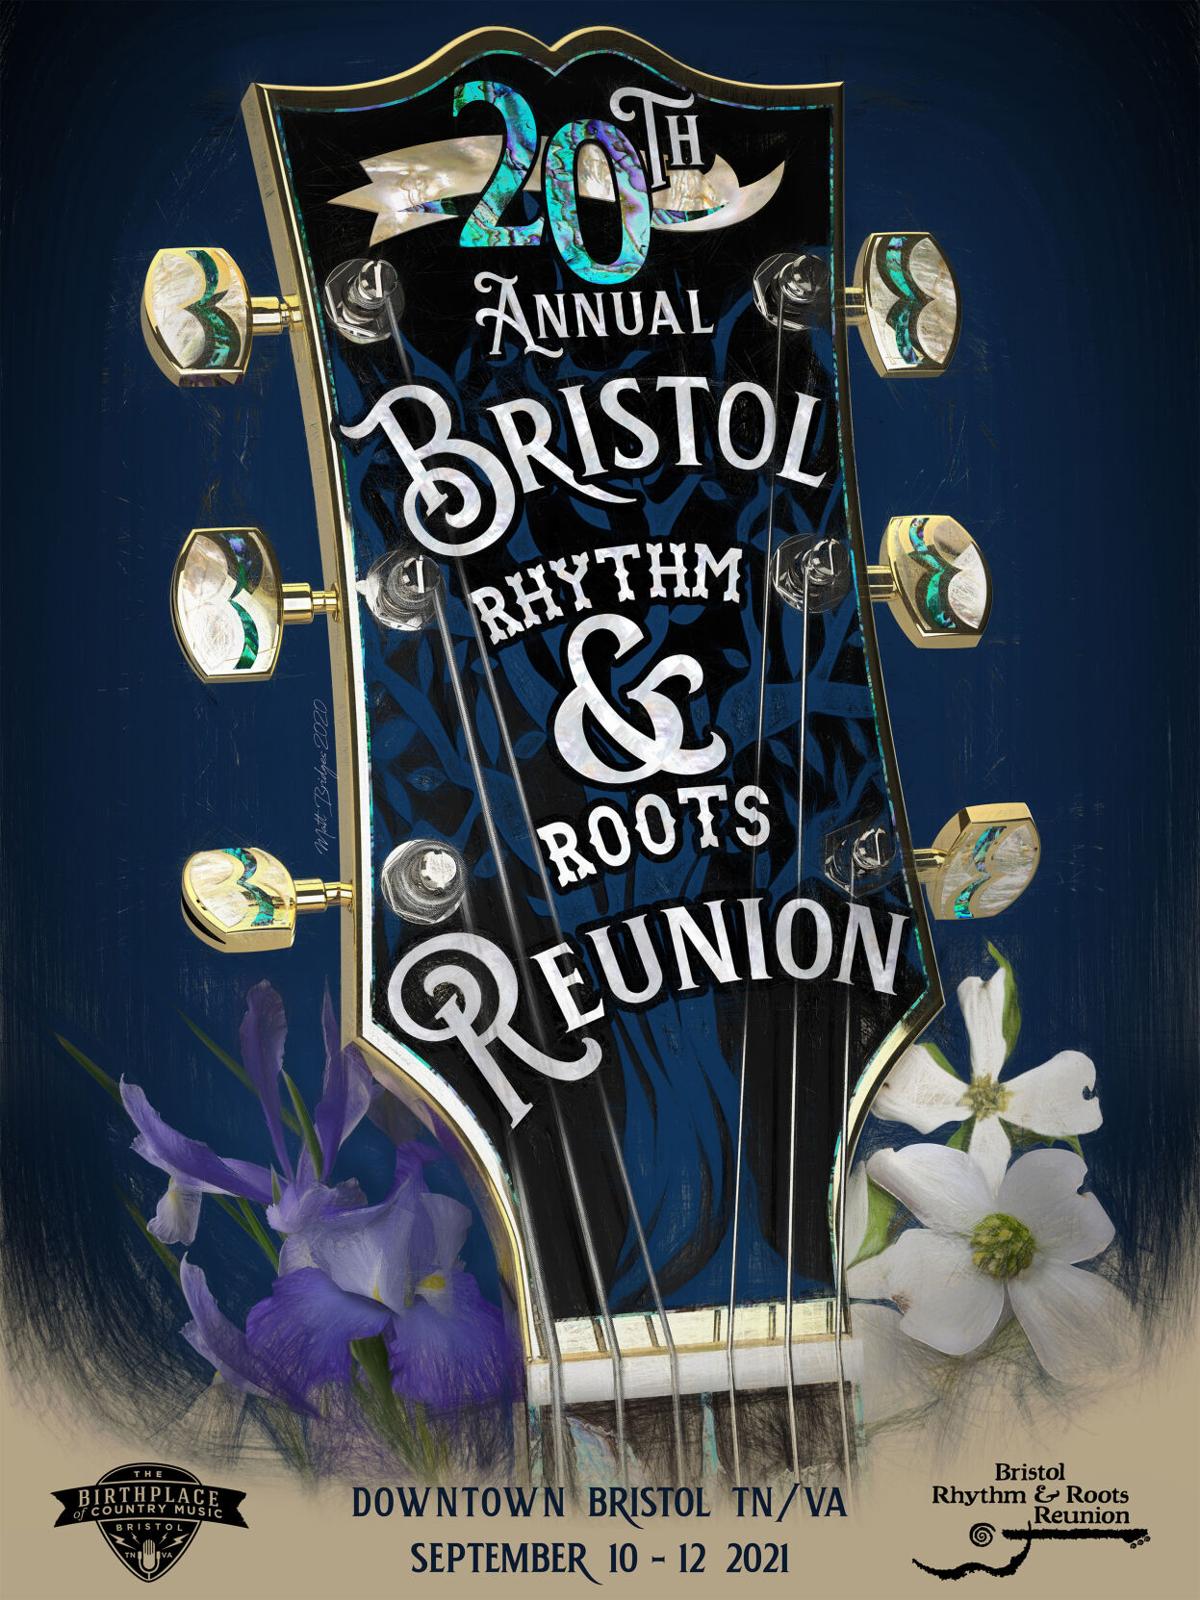 Bristol Rhythm & Roots Reunion unveils schedule